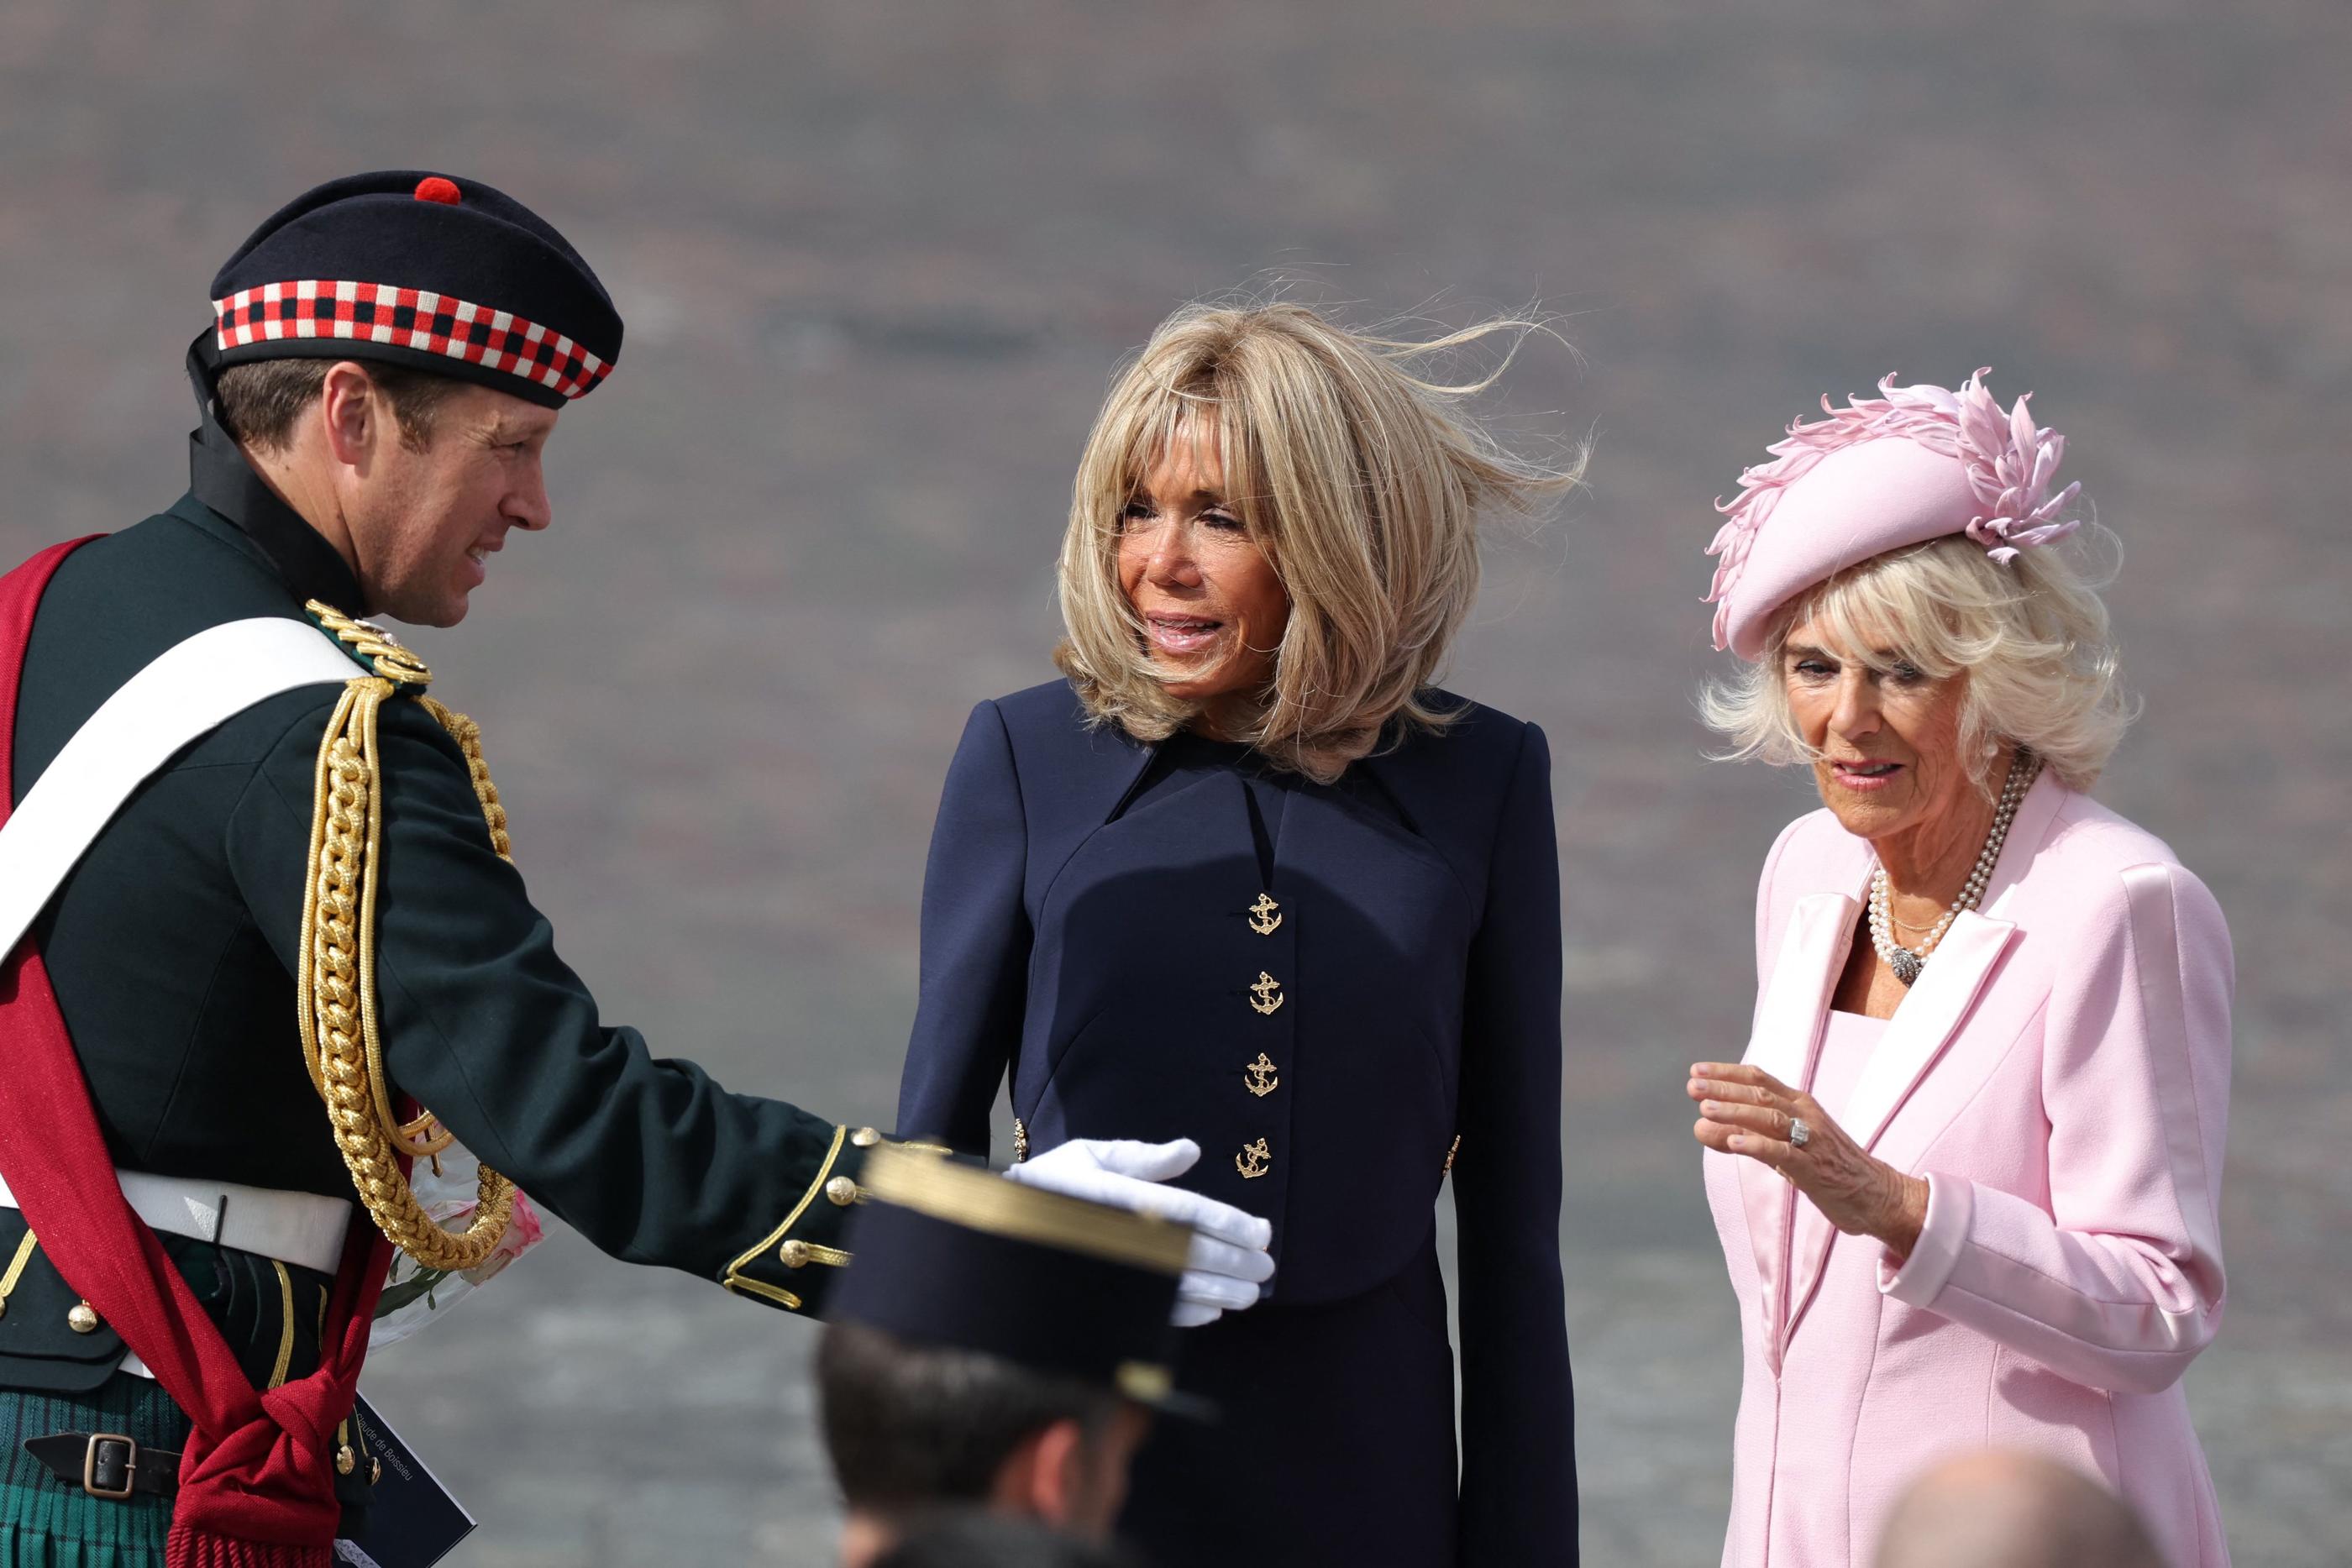 Jonathan Thompson, l'écuyer du roi, aux côtés de Brigitte Macron et de la reine consort Camilla lors de son déplacement en France. AFP/Thomas Samson